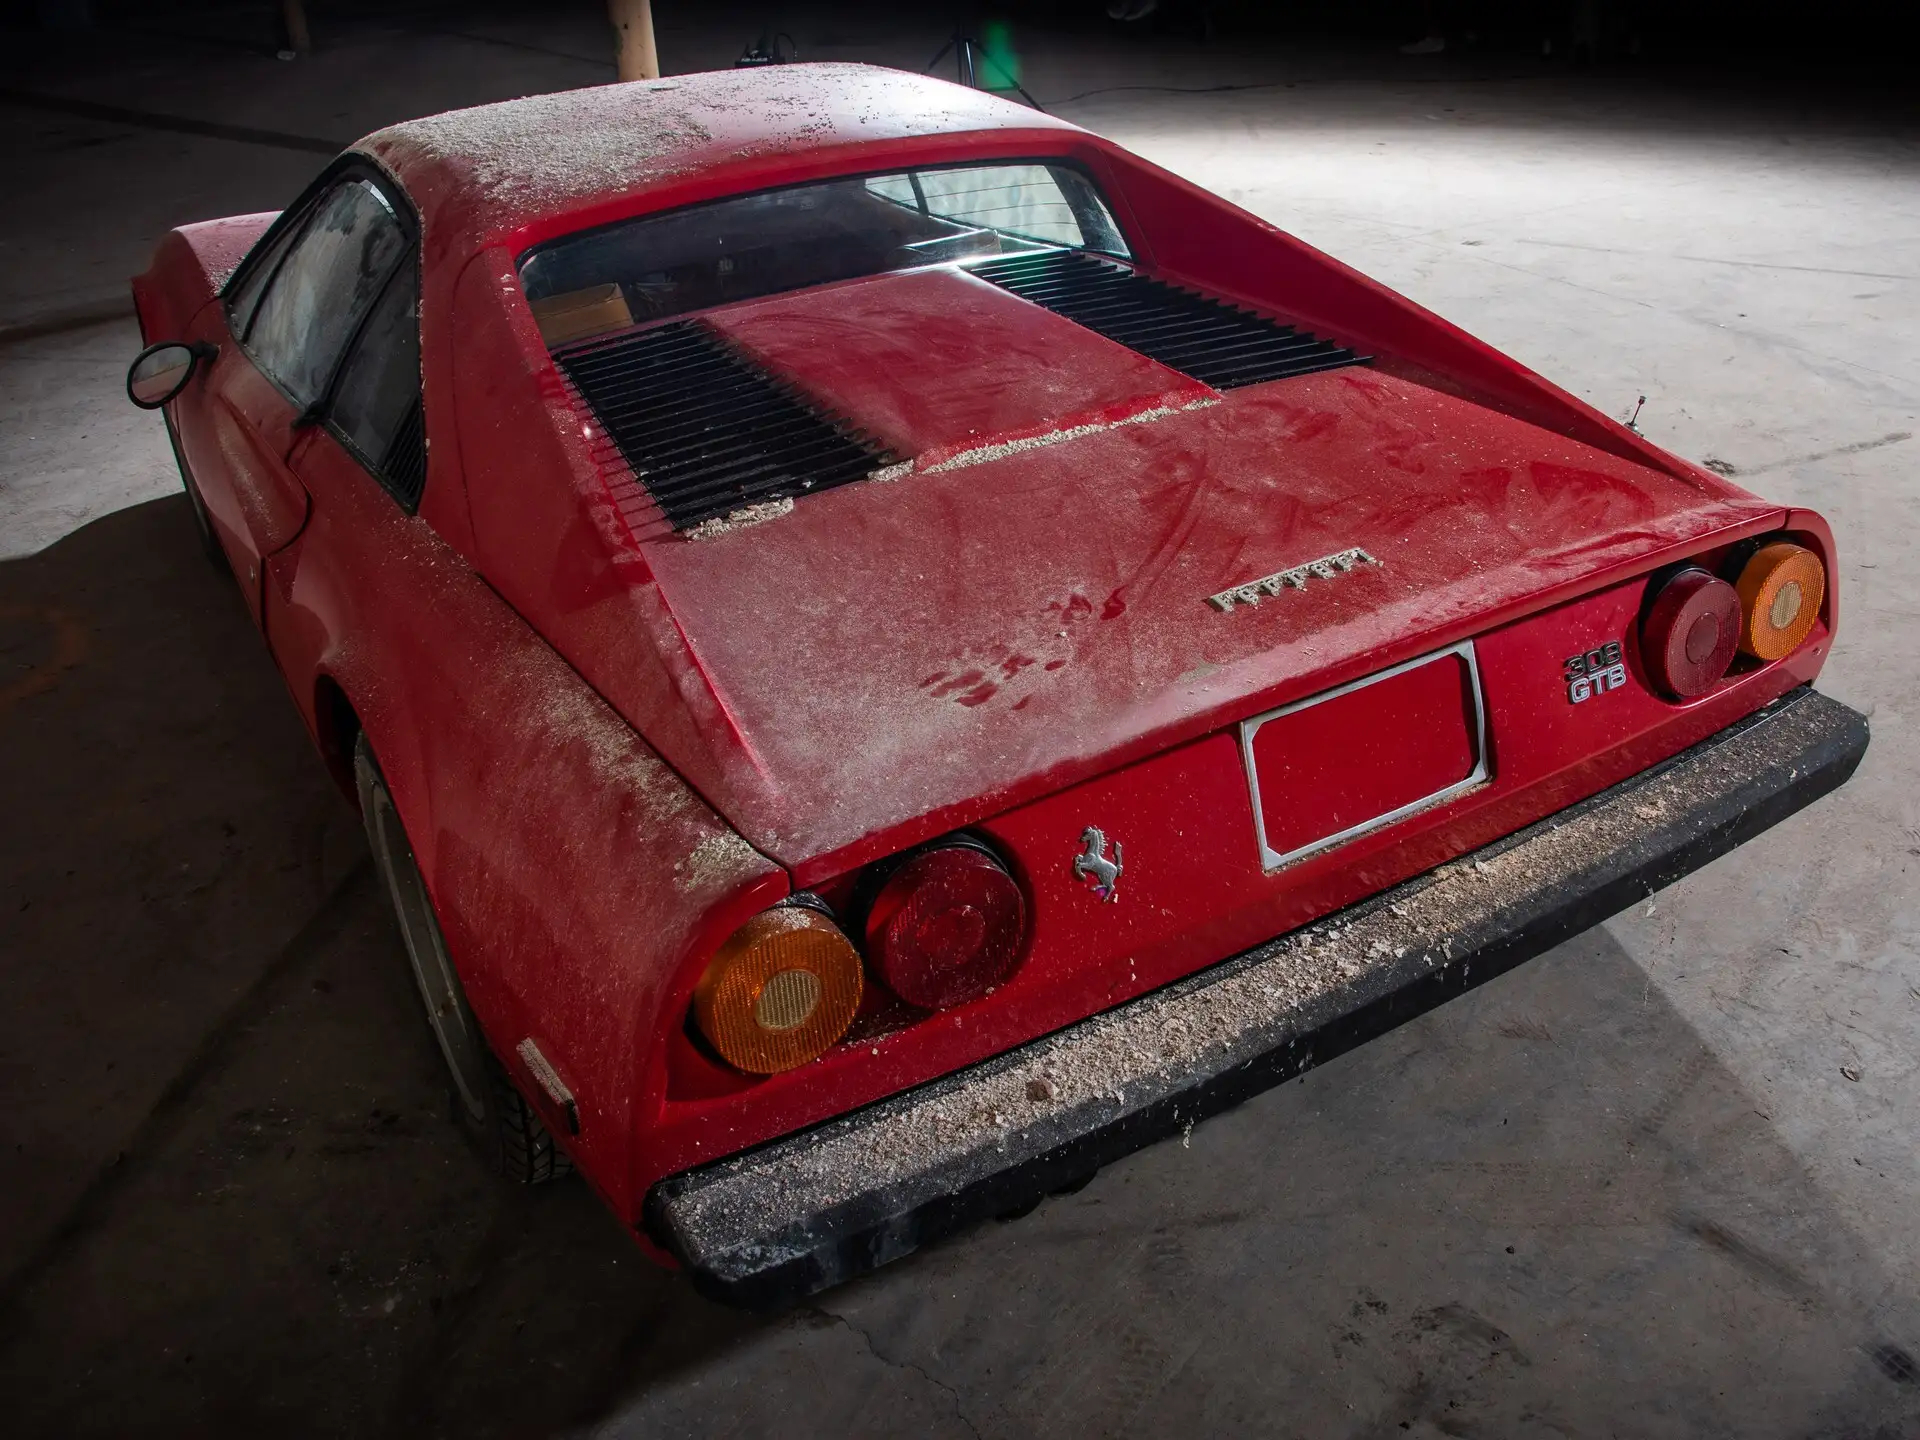 Ferrari 308GTB vetroresina 1976, Photos Darin Schnabel © Courtesy of RM Sotheby’s